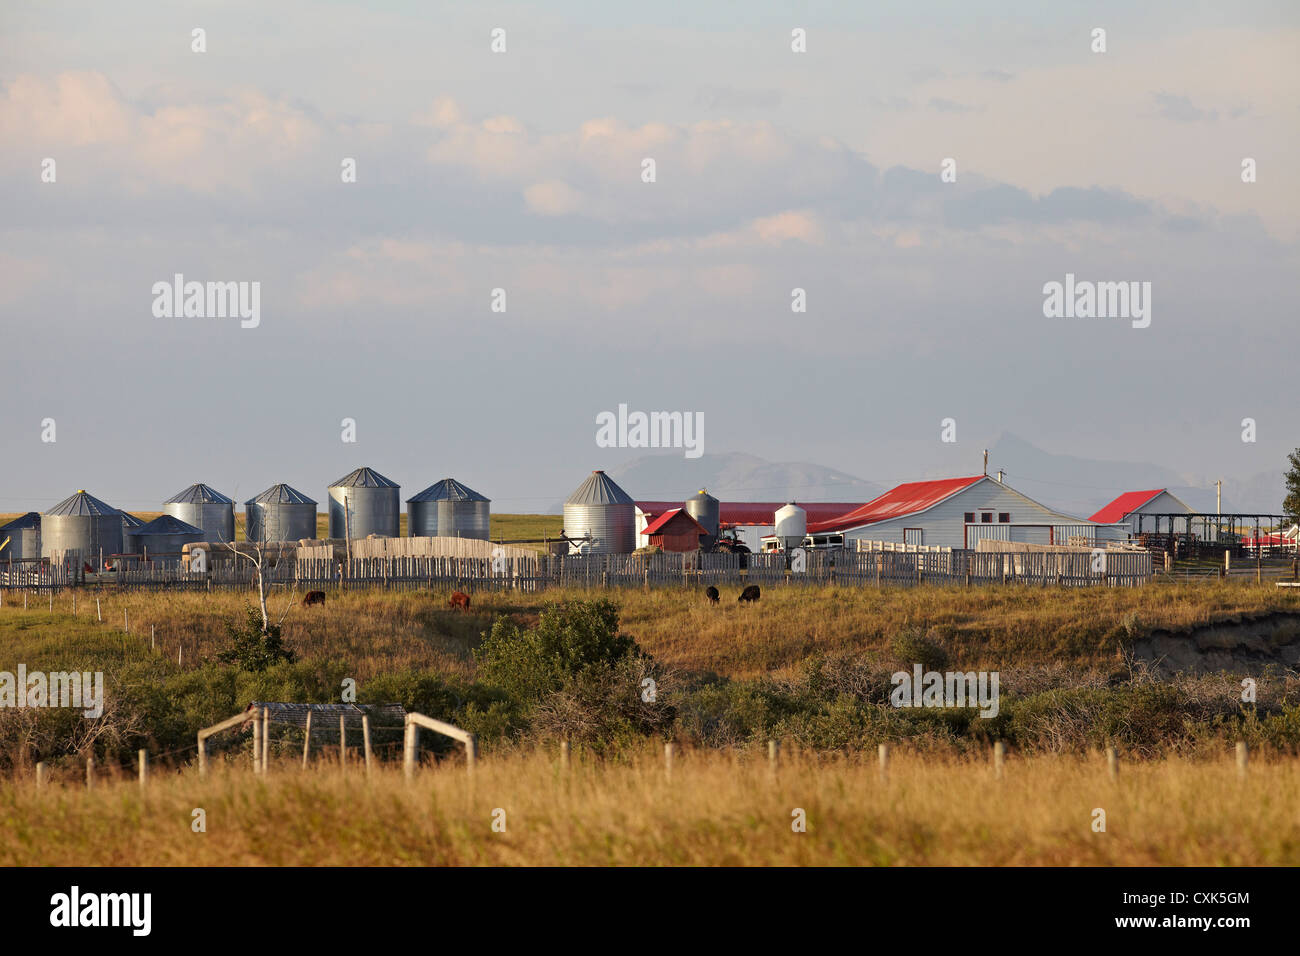 Los edificios de la granja, las montañas en la distancia, la utopía, la granja de estrangulador Creek, Alberta, Canadá Foto de stock